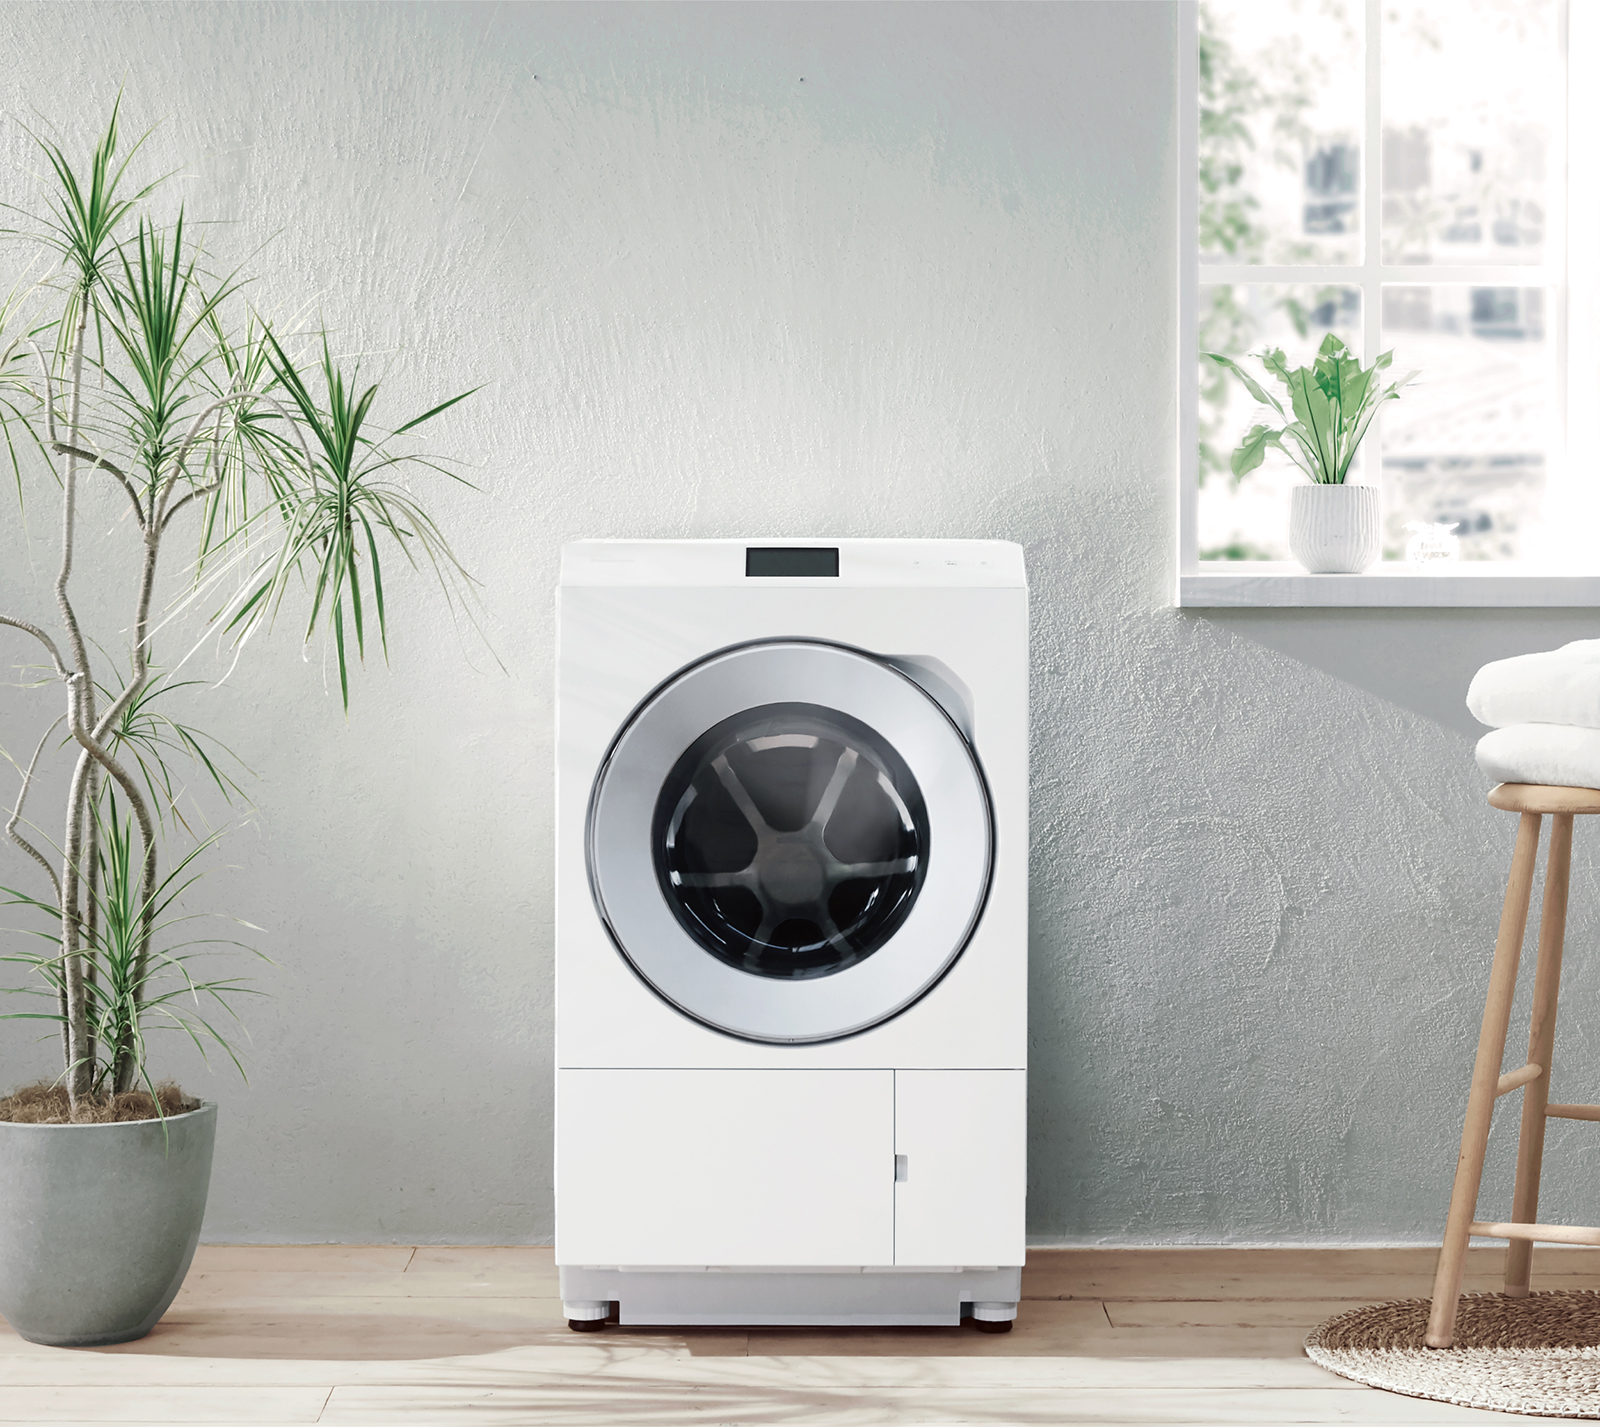 ななめドラム洗濯乾燥機 NA-LX129BL他 4機種を発売 | 個人向け商品 